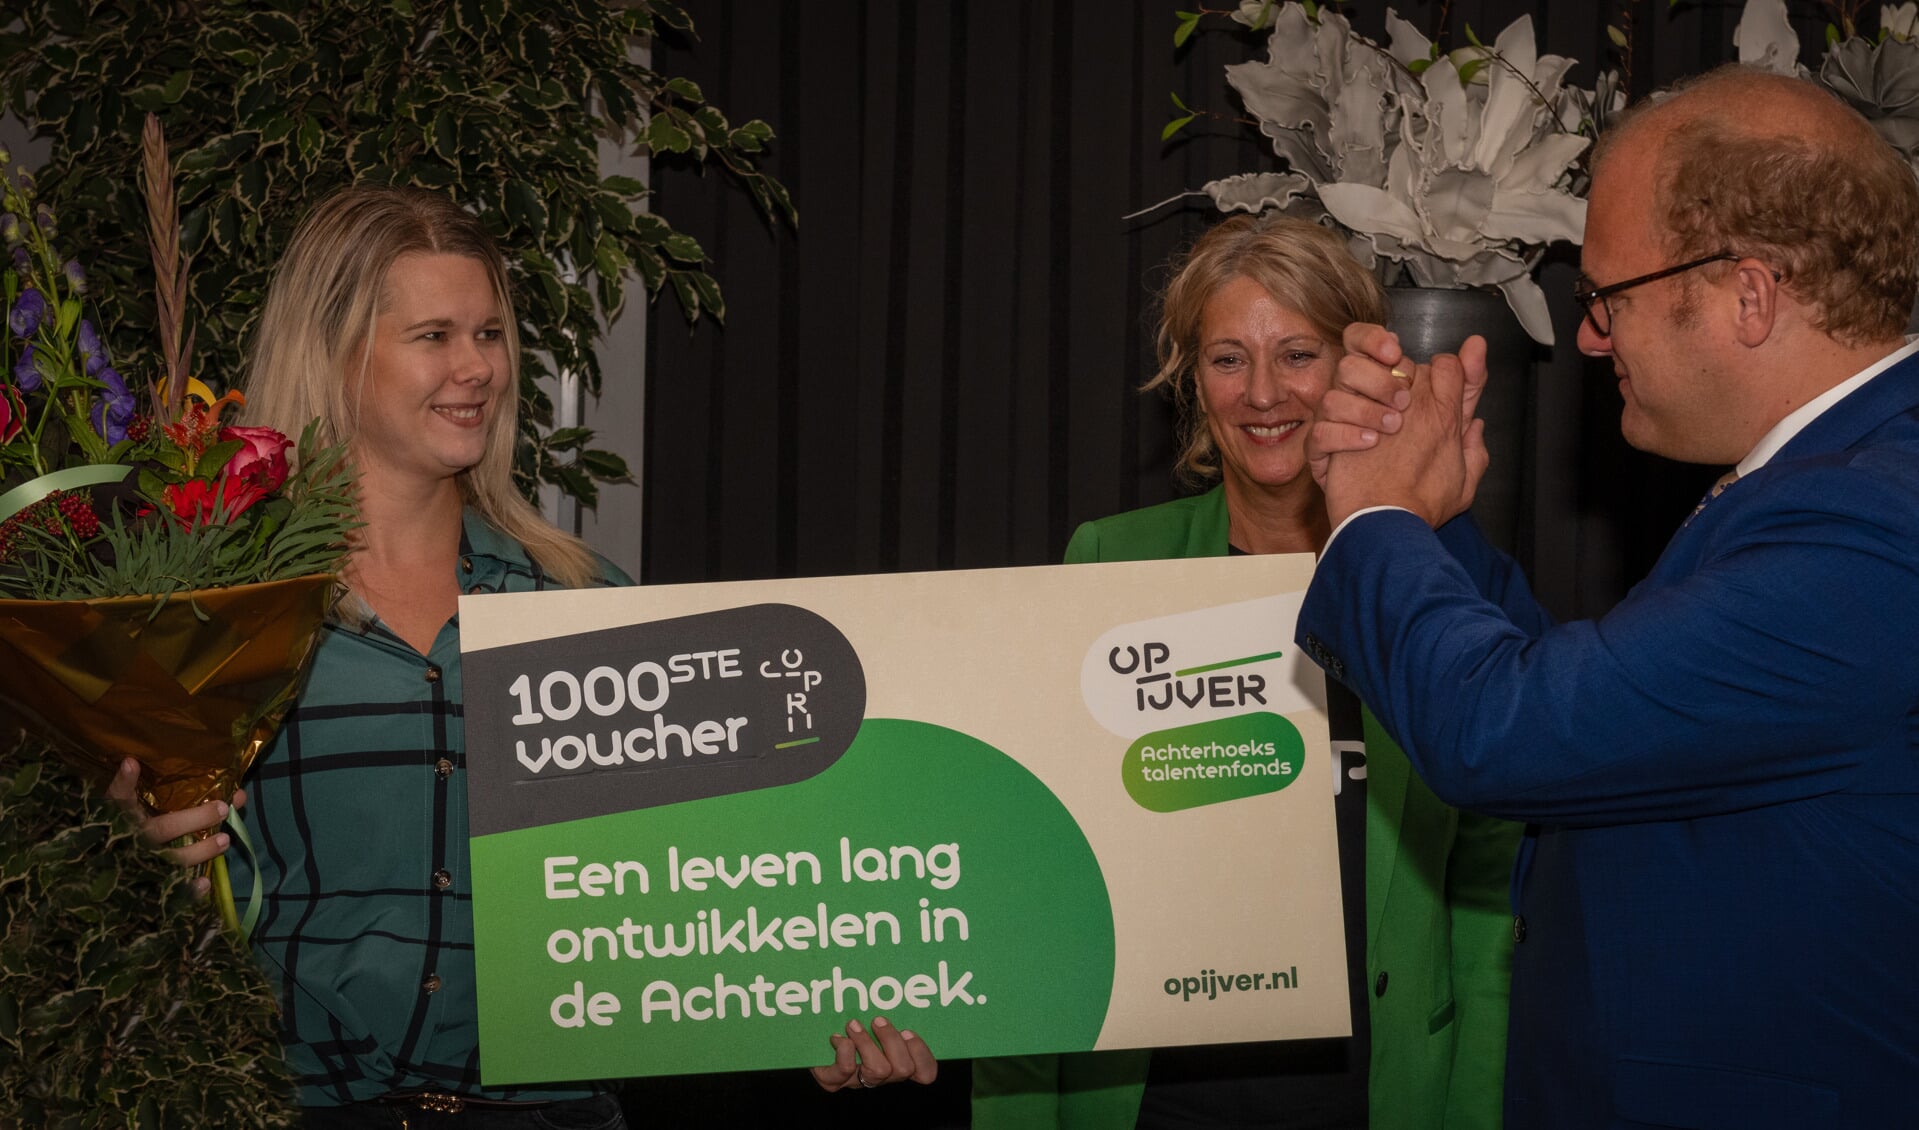 De 1000ste voucher wordt uitgereikt door burgermeester van Winterwijk, Joris Bengevoord, in Ons Huis in Hengelo aan Mandy Hols. Foto: PR